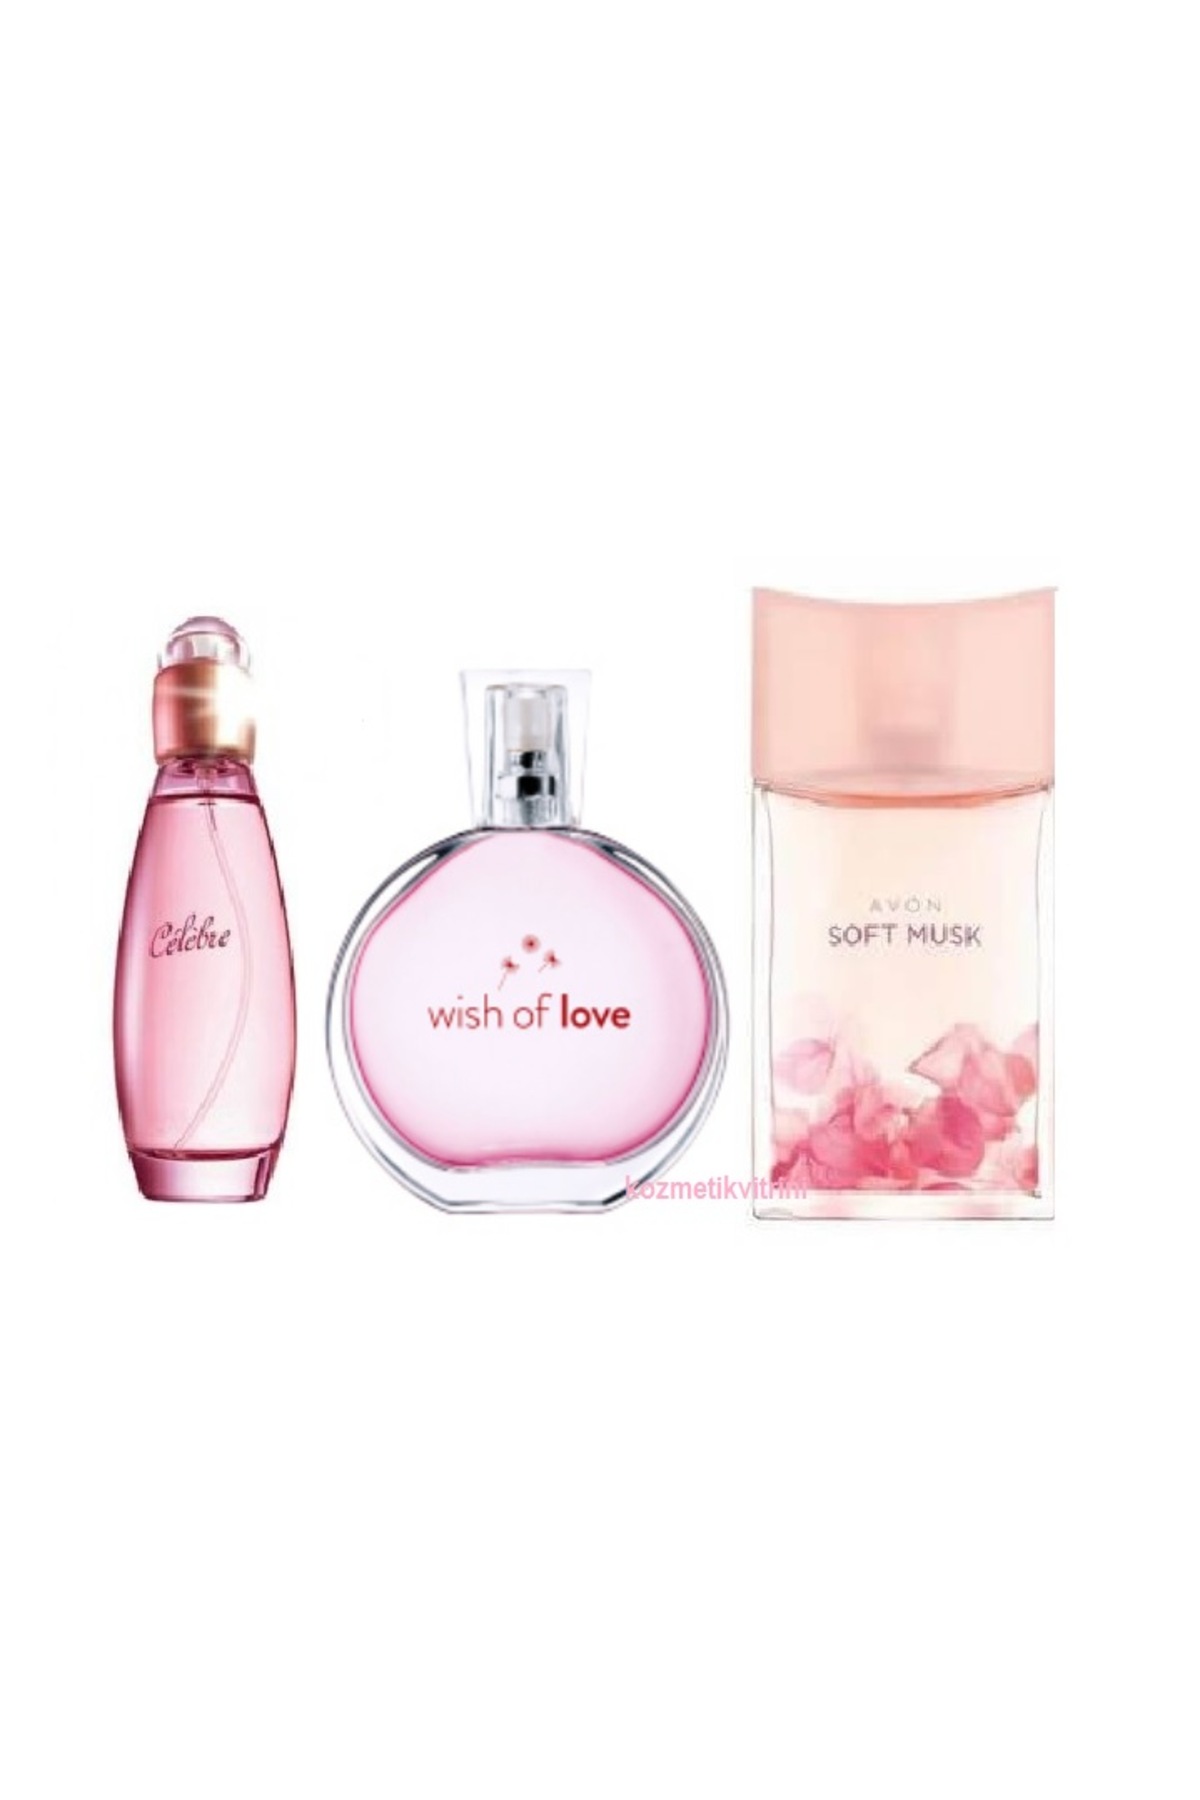 Avon Celebre Wish Of Love Soft Musk Bayan Parfum Fiyatlari Ve Ozellikleri